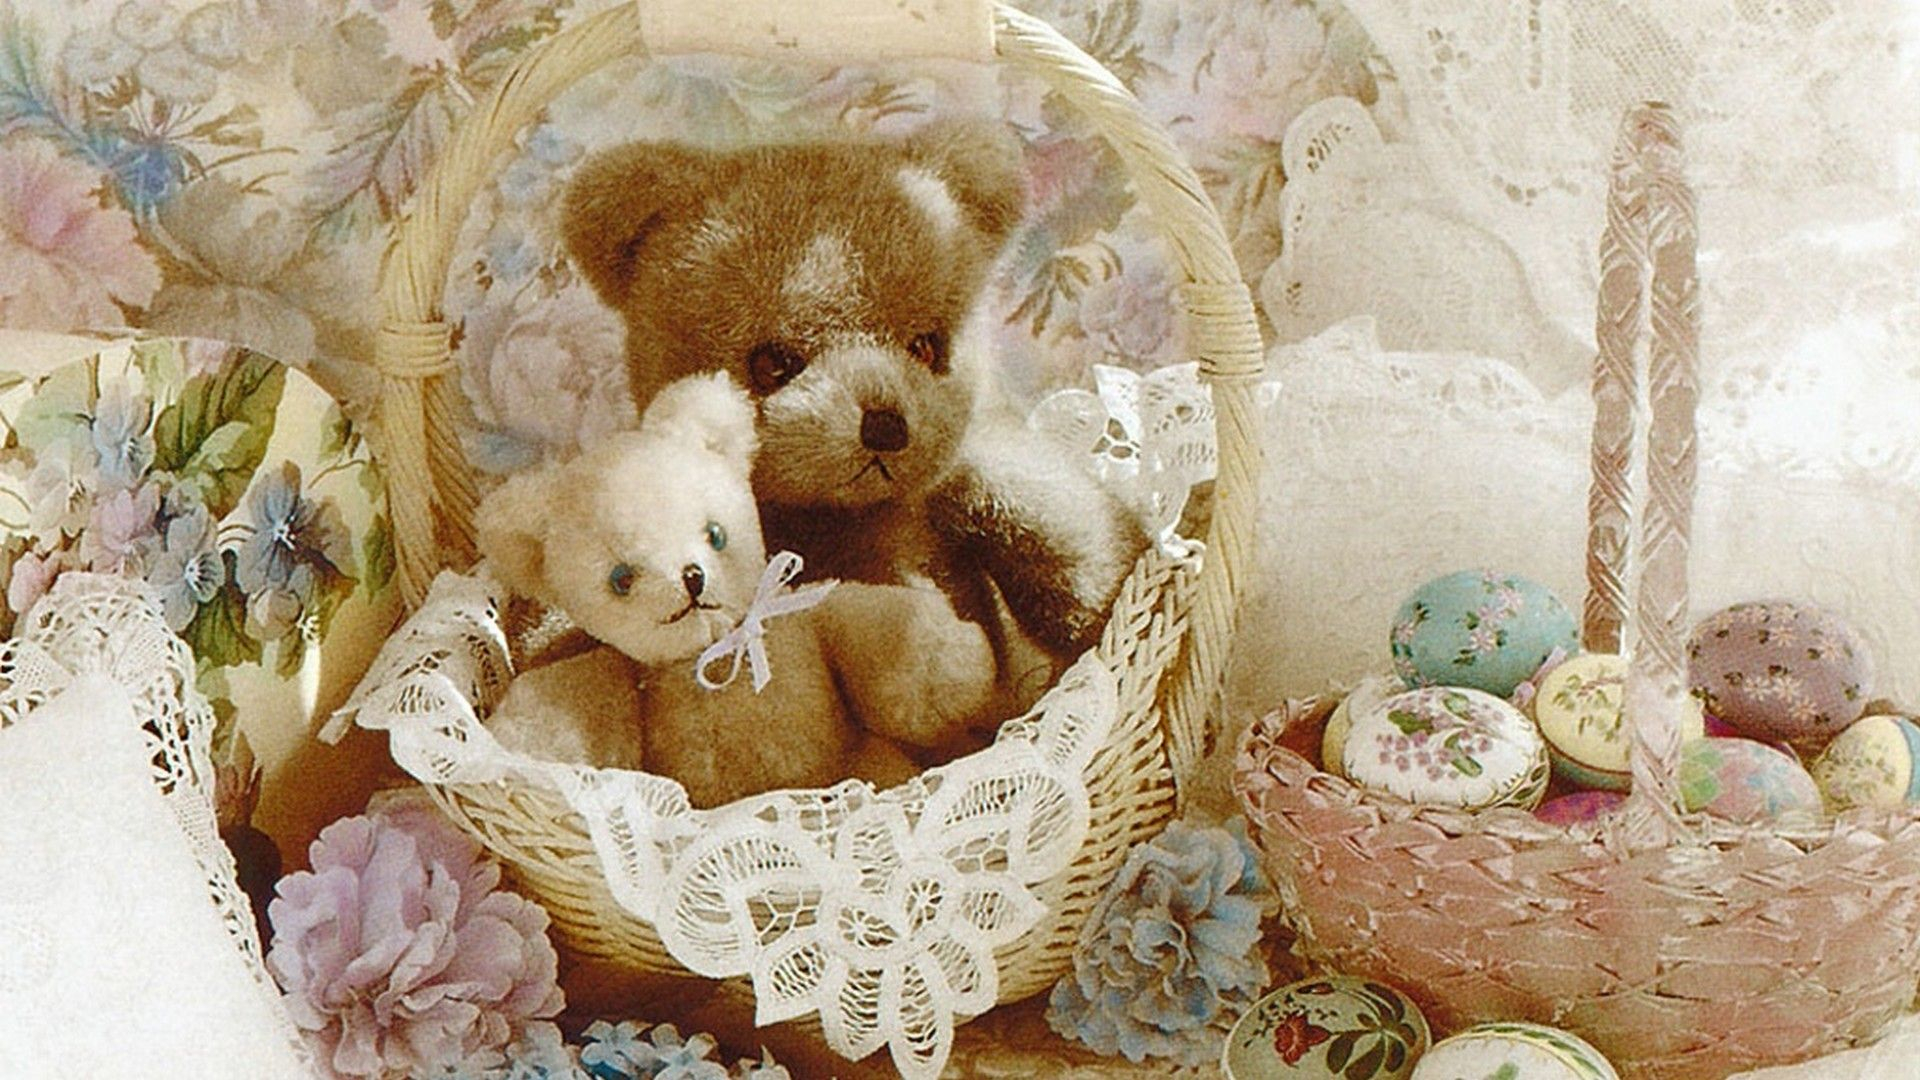 1920x1080 Cute Teddy Bear Desktop Backgrounds HD | Best Wallpaper HD | Teddy bear wallpaper, Teddy bear history, Teddy bear